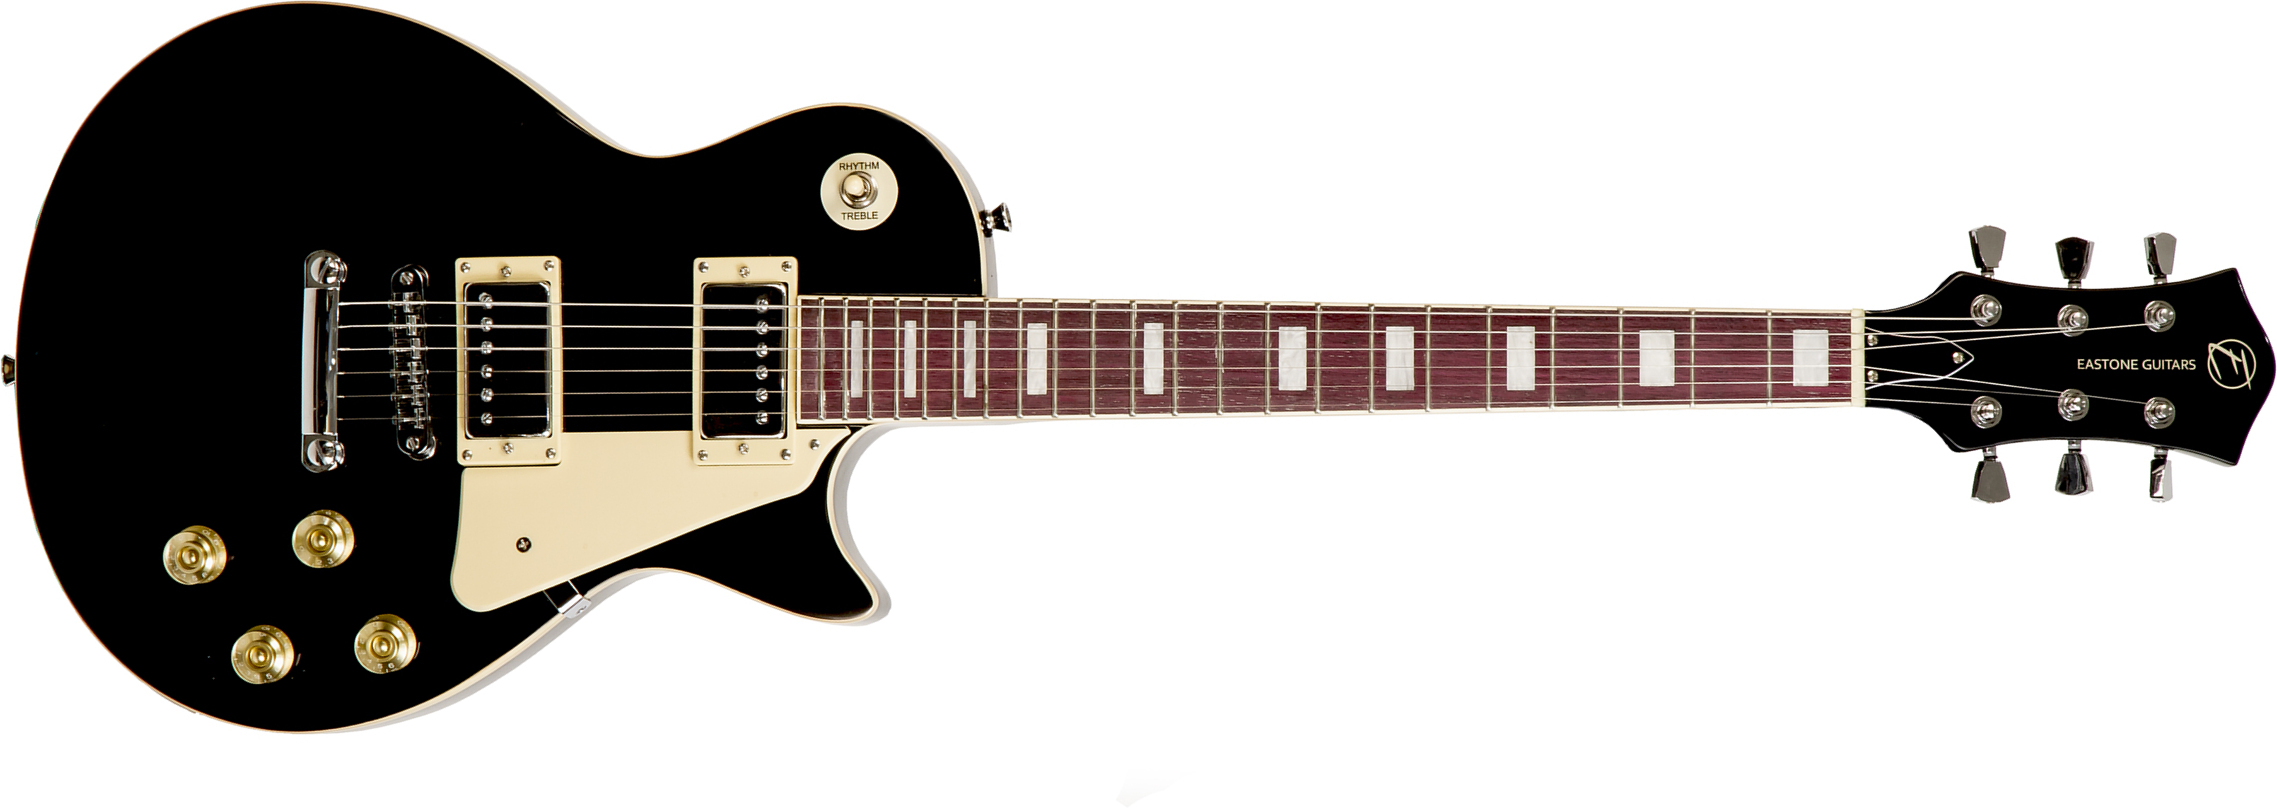 Eastone Lp100 Blk Hh Ht Pur - Black - Single-Cut-E-Gitarre - Main picture